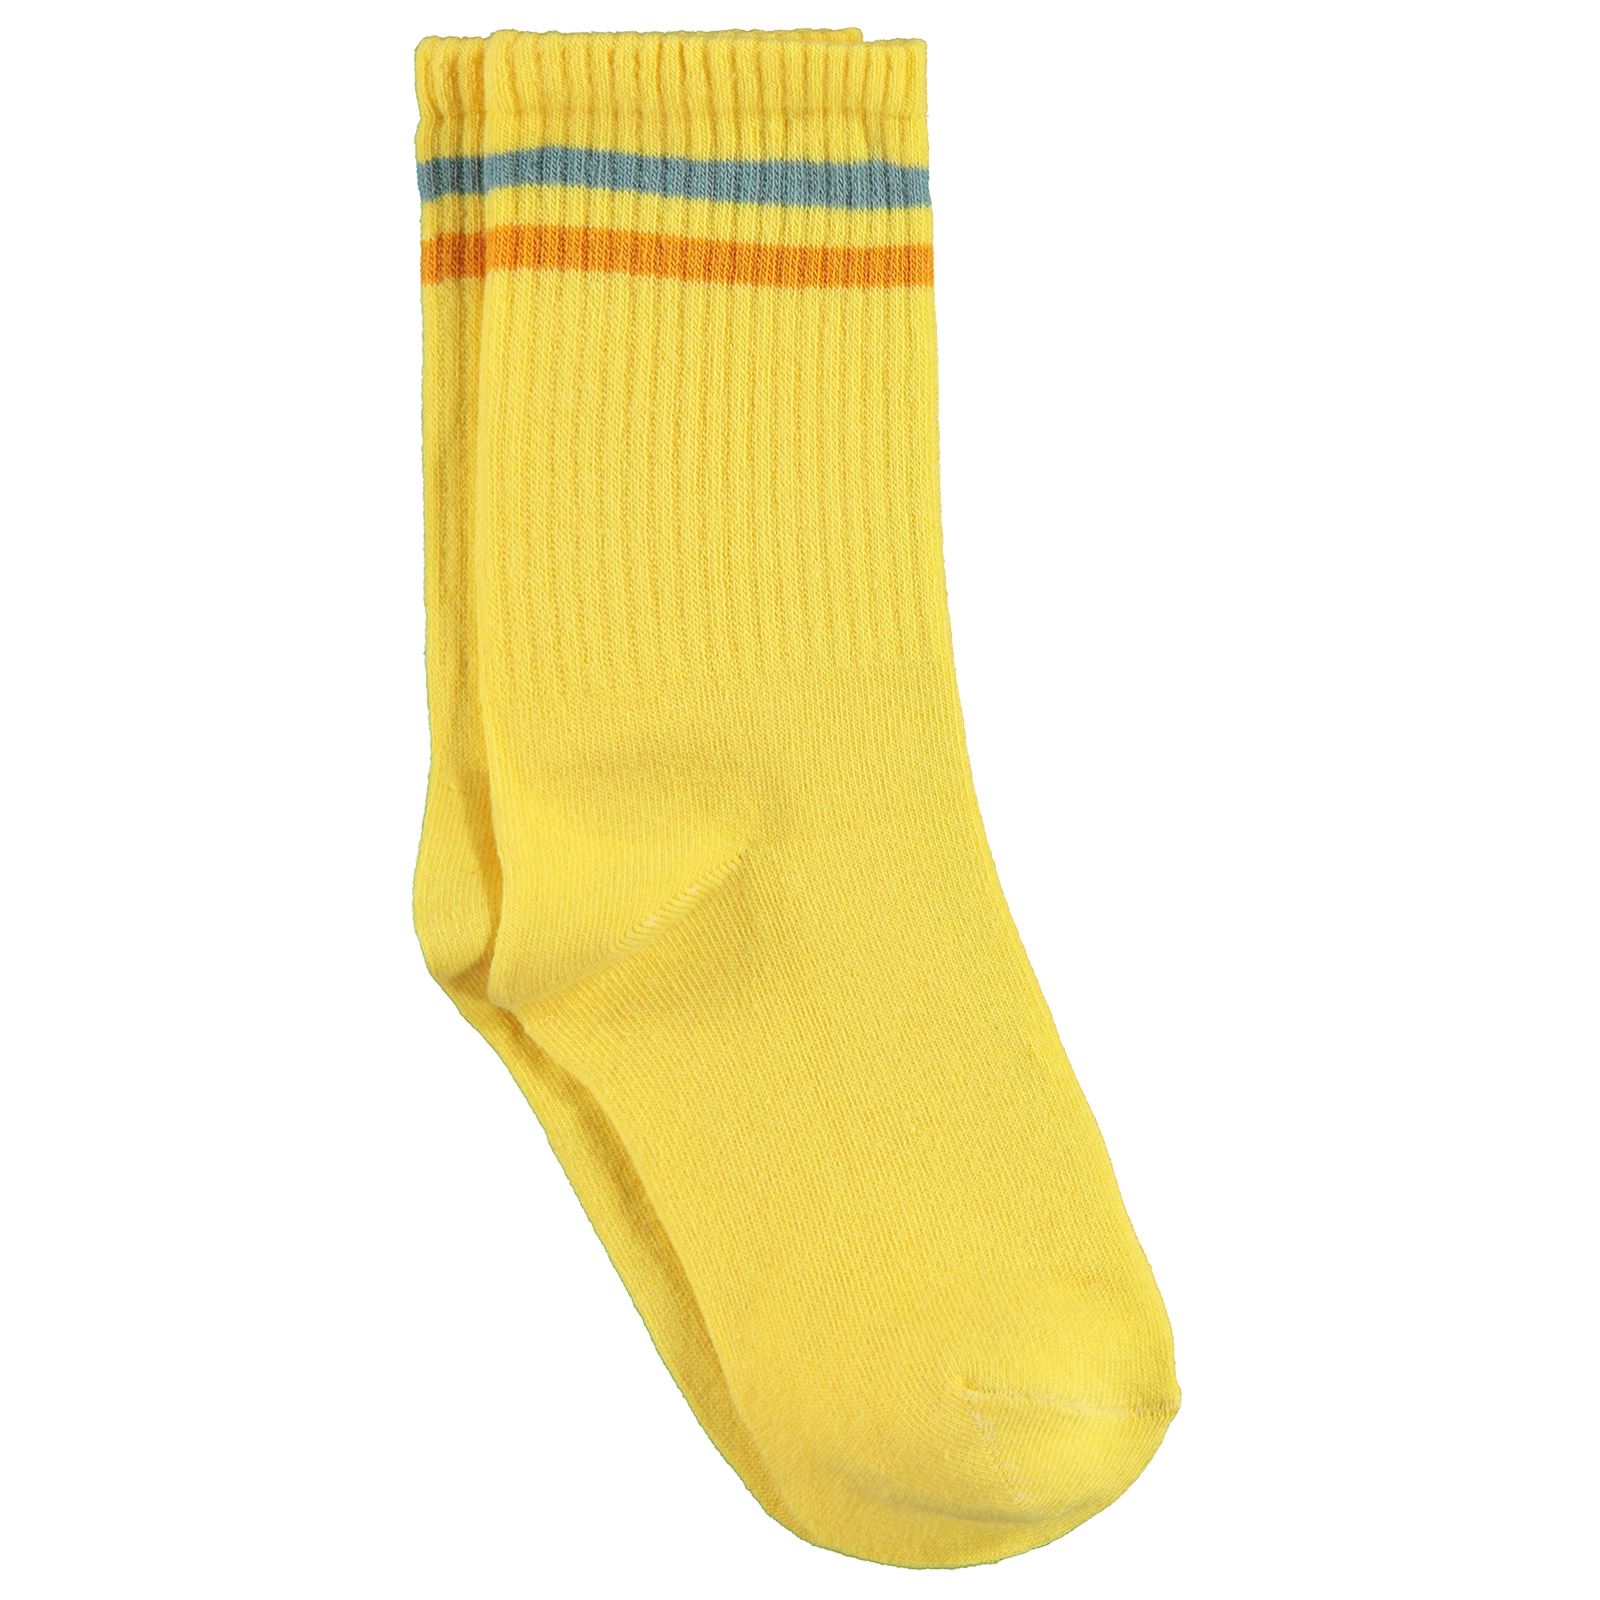 Gzn Kadın Soket Çorap 36-40 Numara Sarı